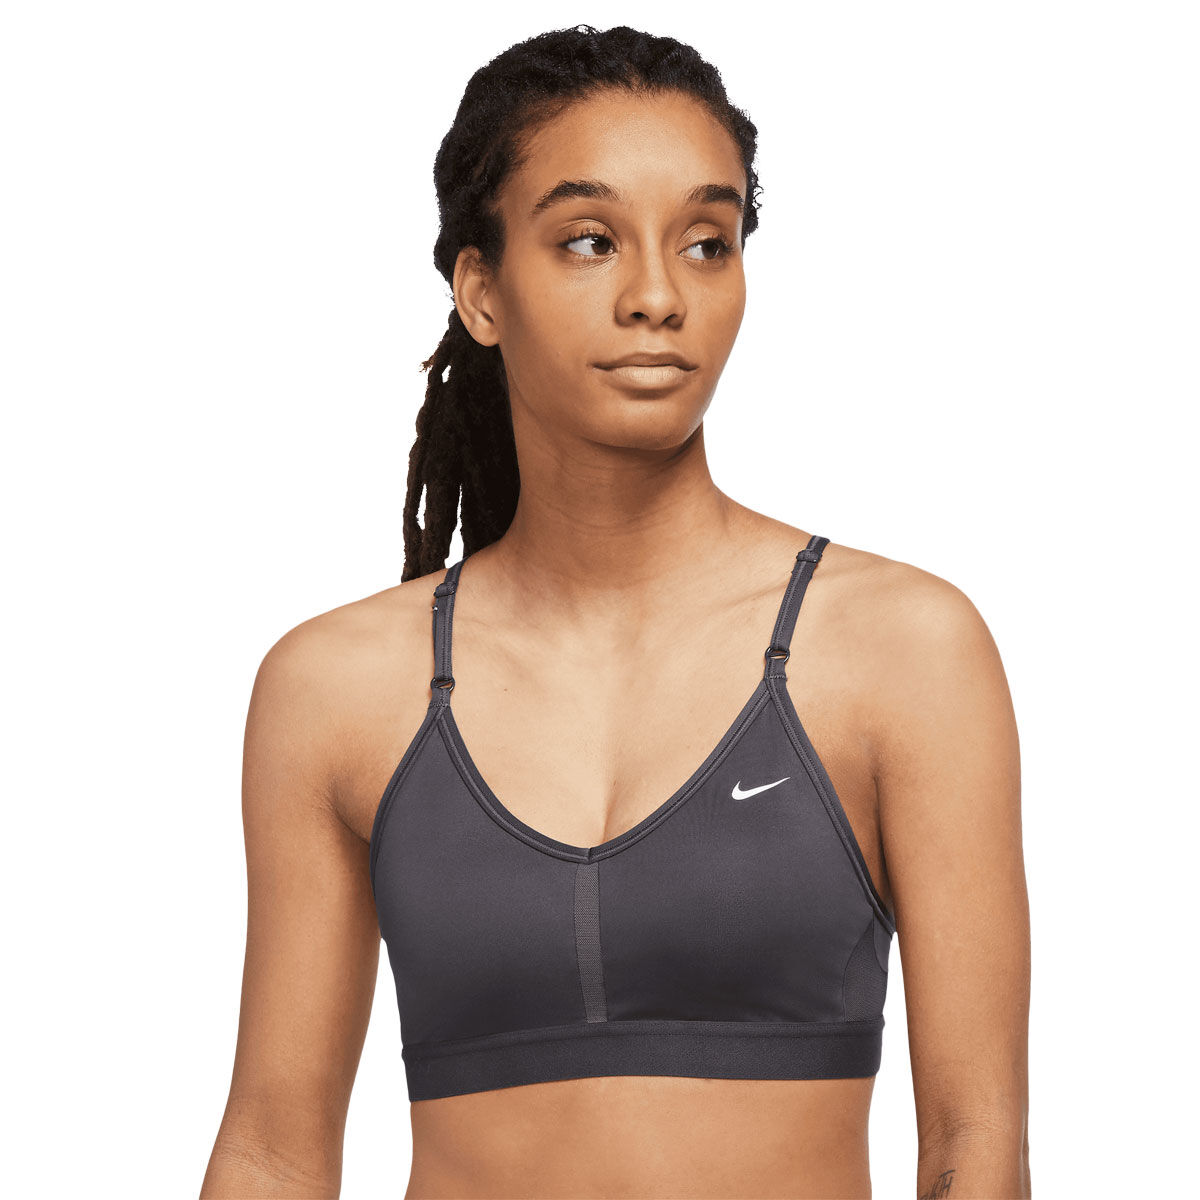 Nike Women's Dri-Fit Low-Impact Sports Indy Bra (Plus Size) Black 2X $35